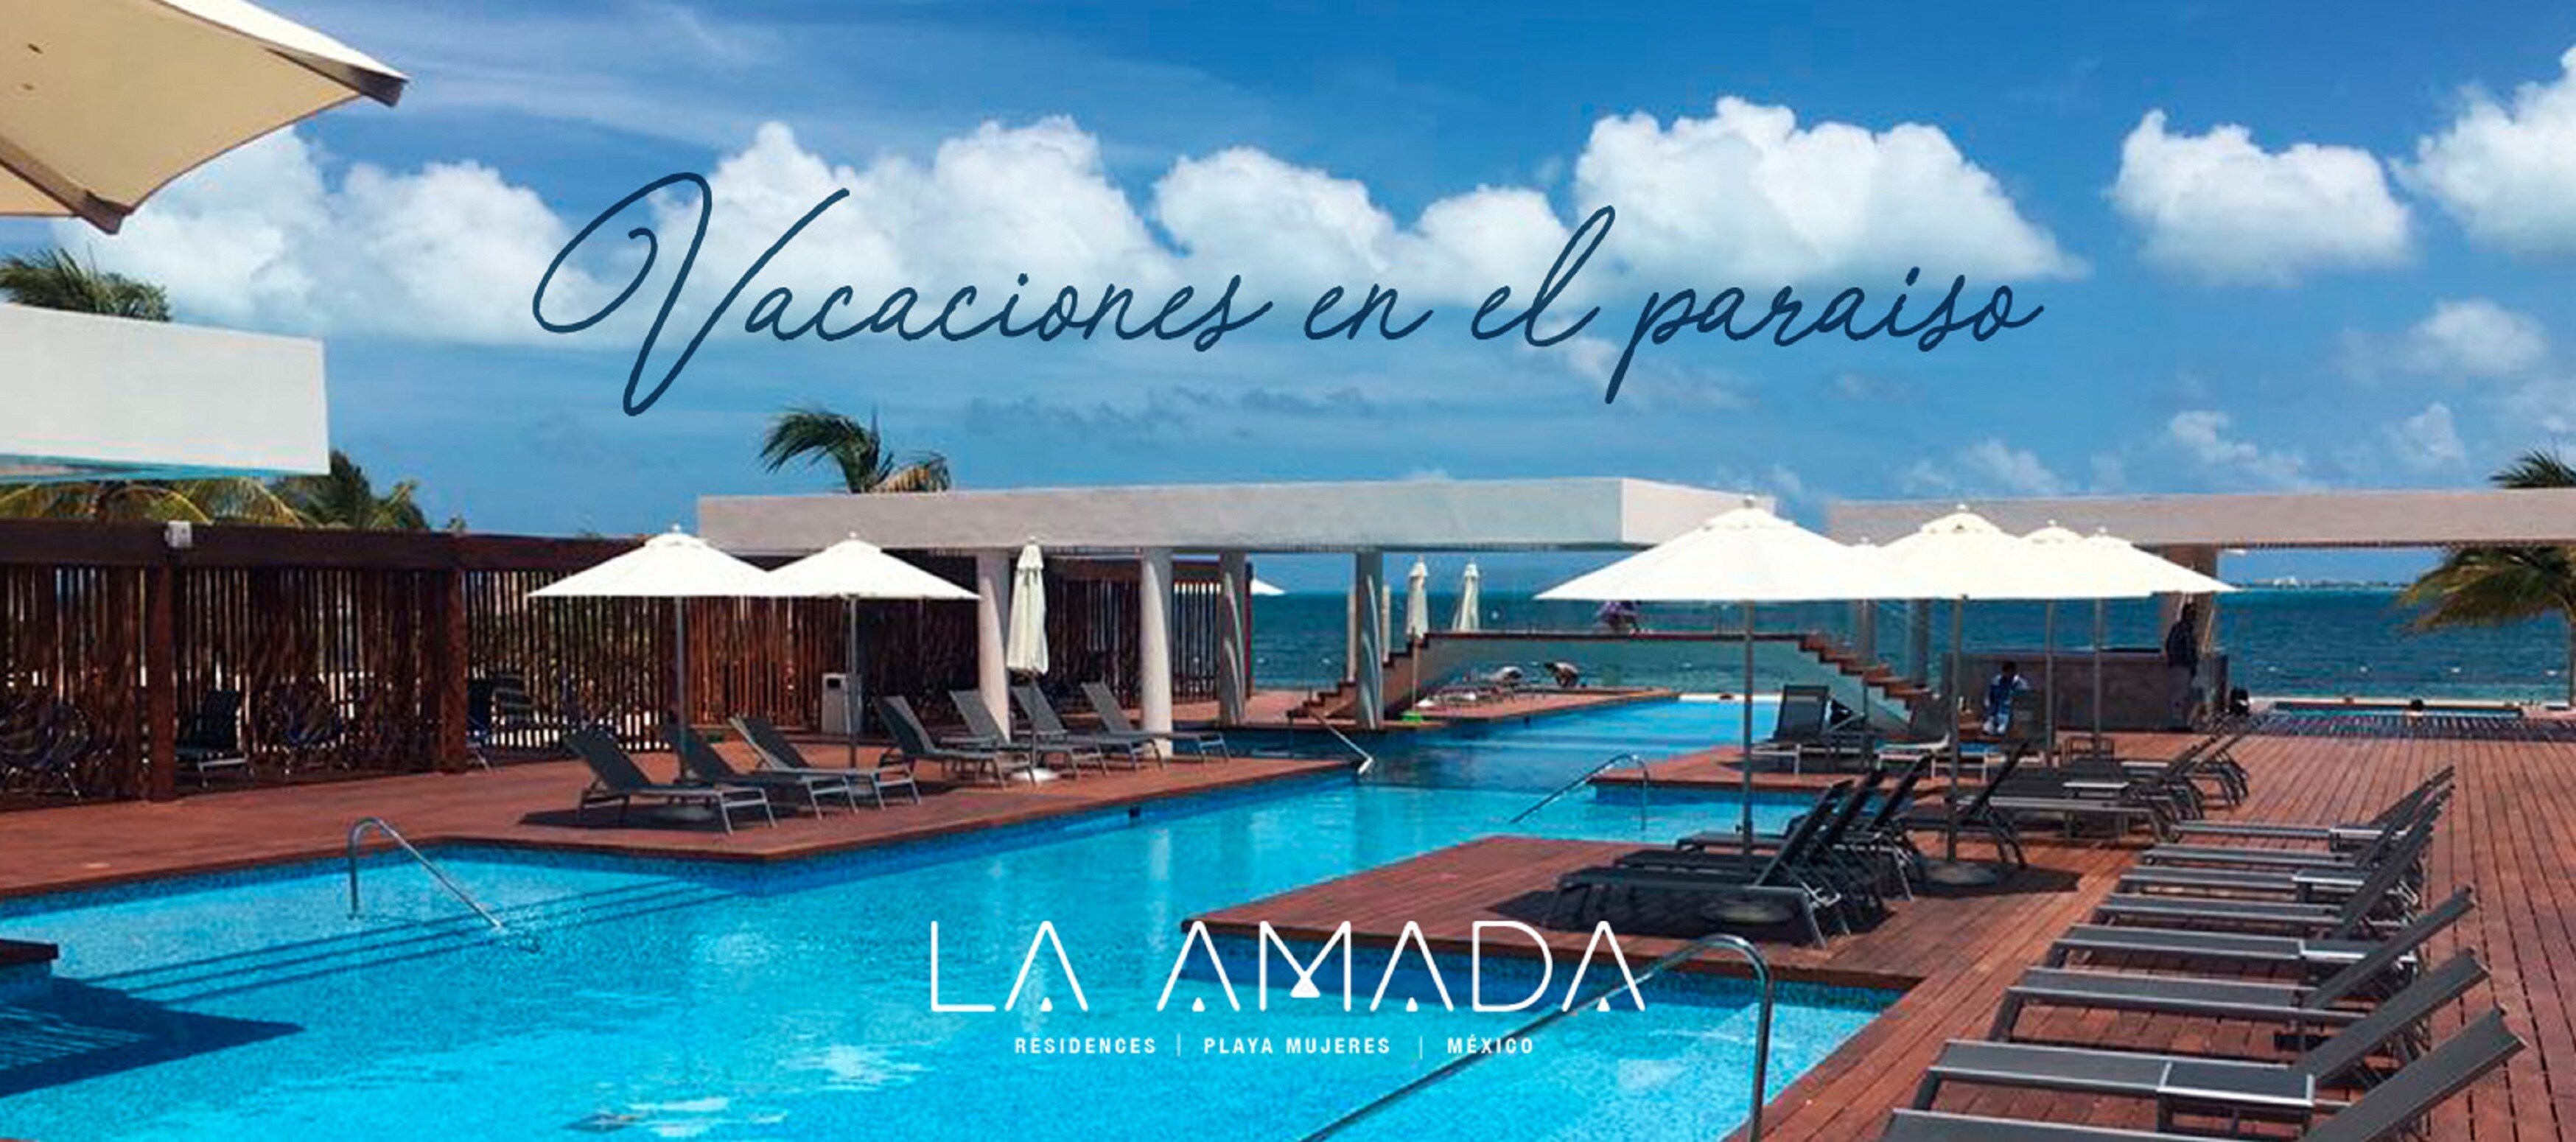 Property Image 1 - La Amada Residences Luxury